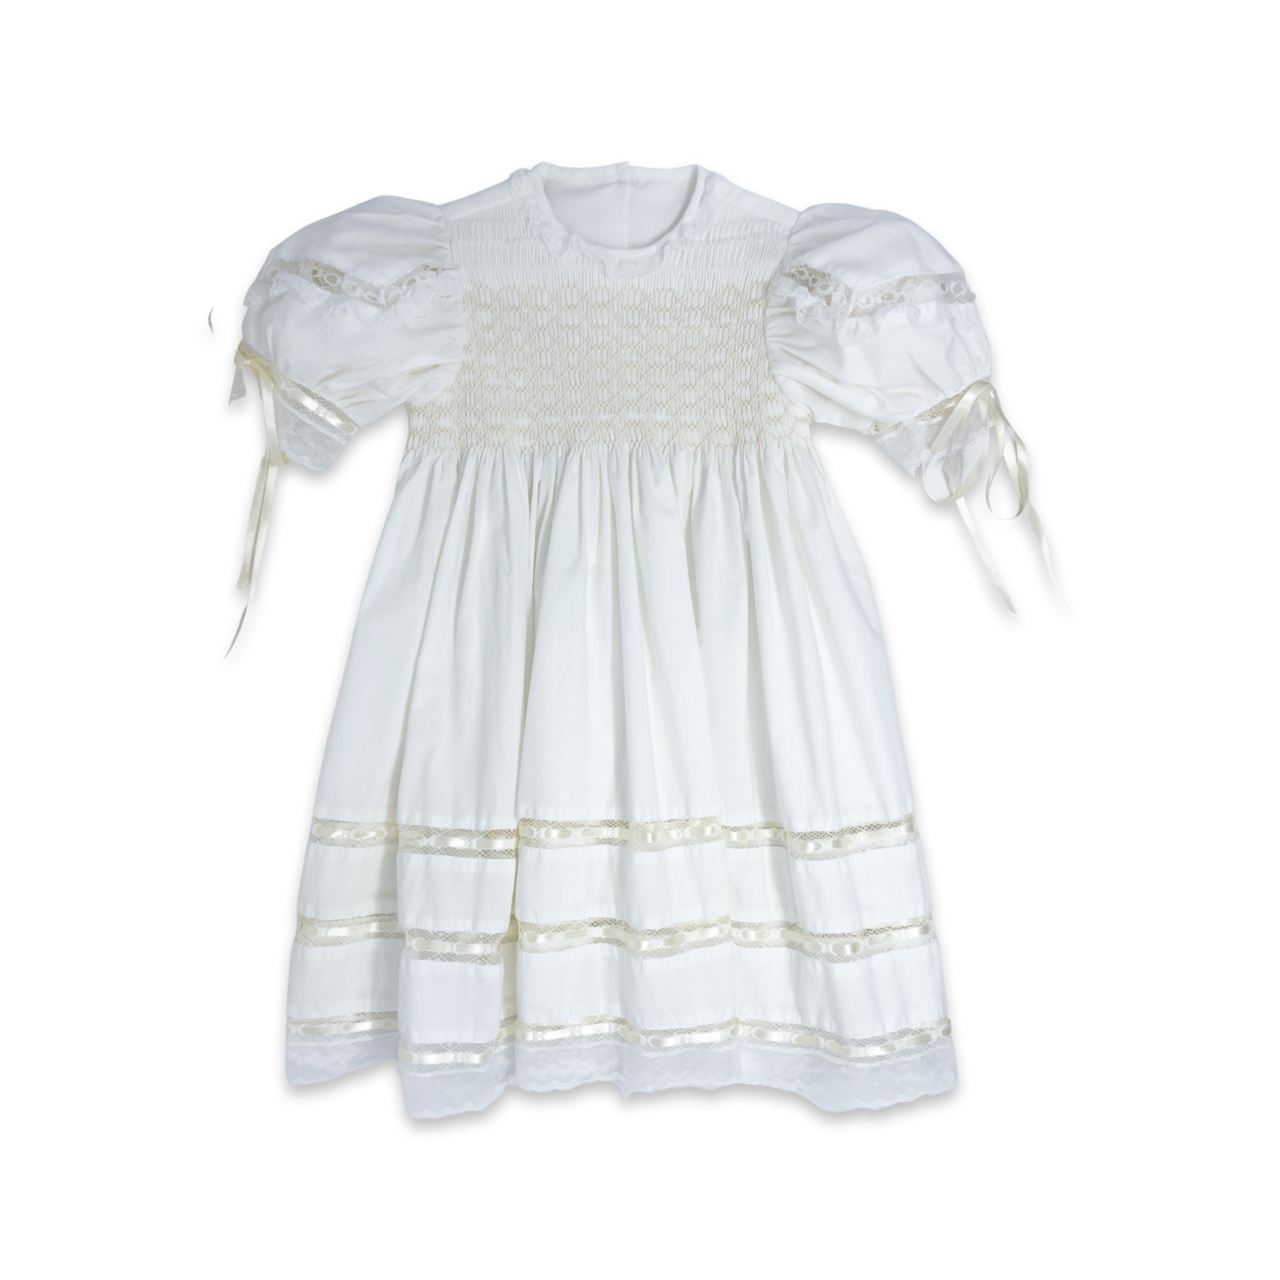 Lullaby Set Middleton Dress Blessings White Batiste J-GDR709CF001 5012